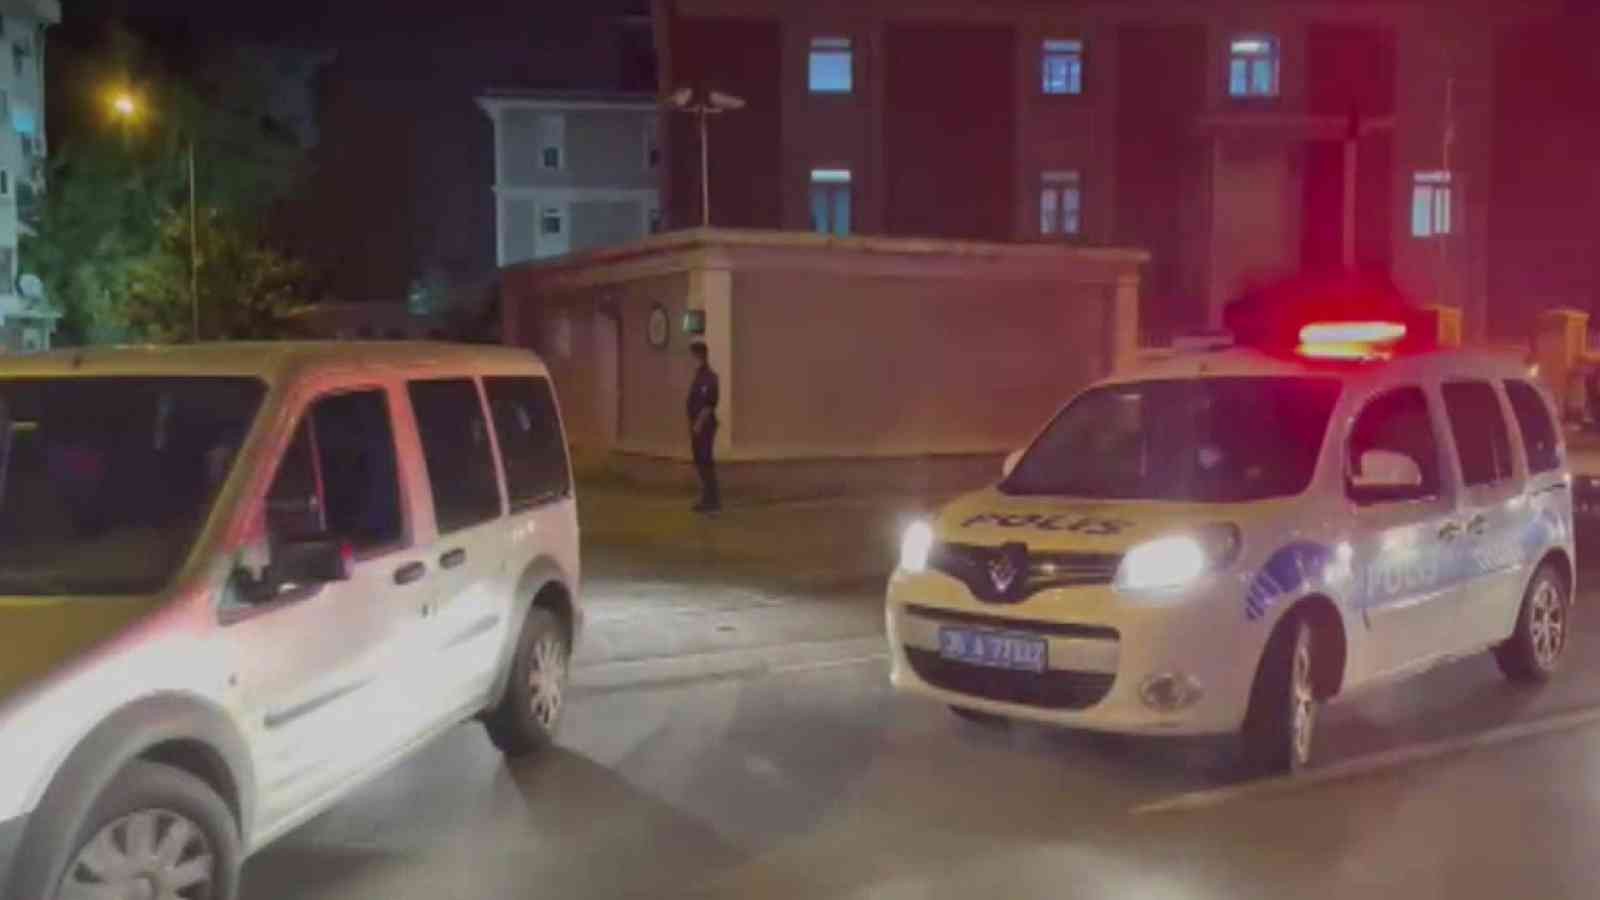 İzmir merkezli 39 ilde FETÖ operasyonu: 97 gözaltı #izmir